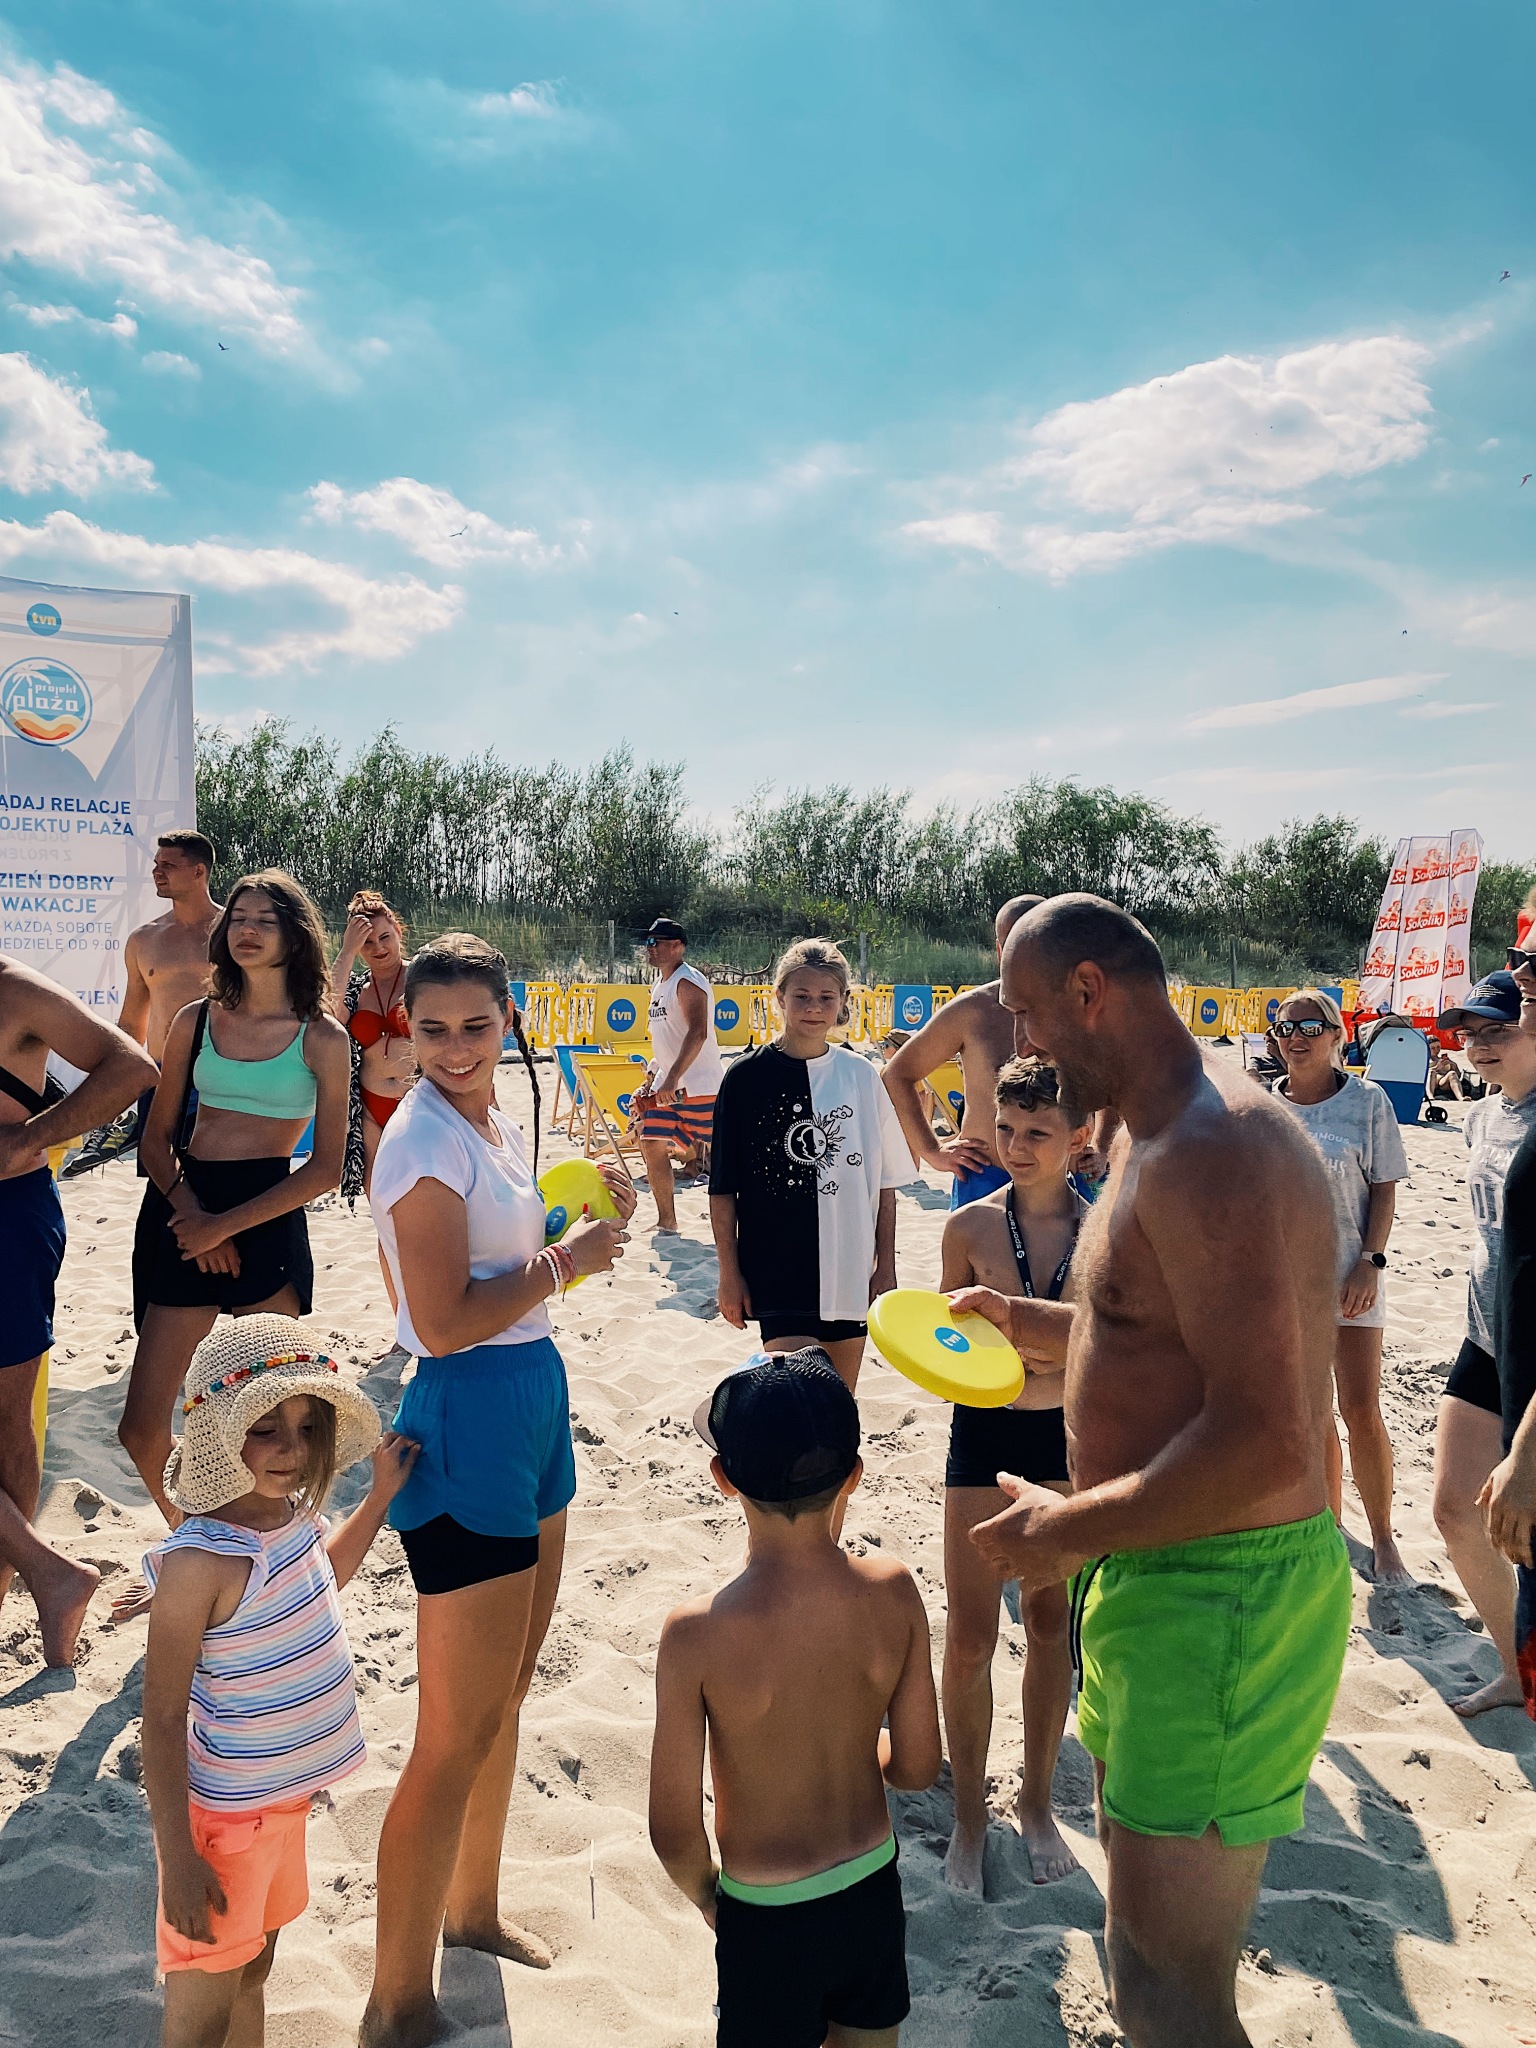 Projekt Plaża 2022: Władysławowo